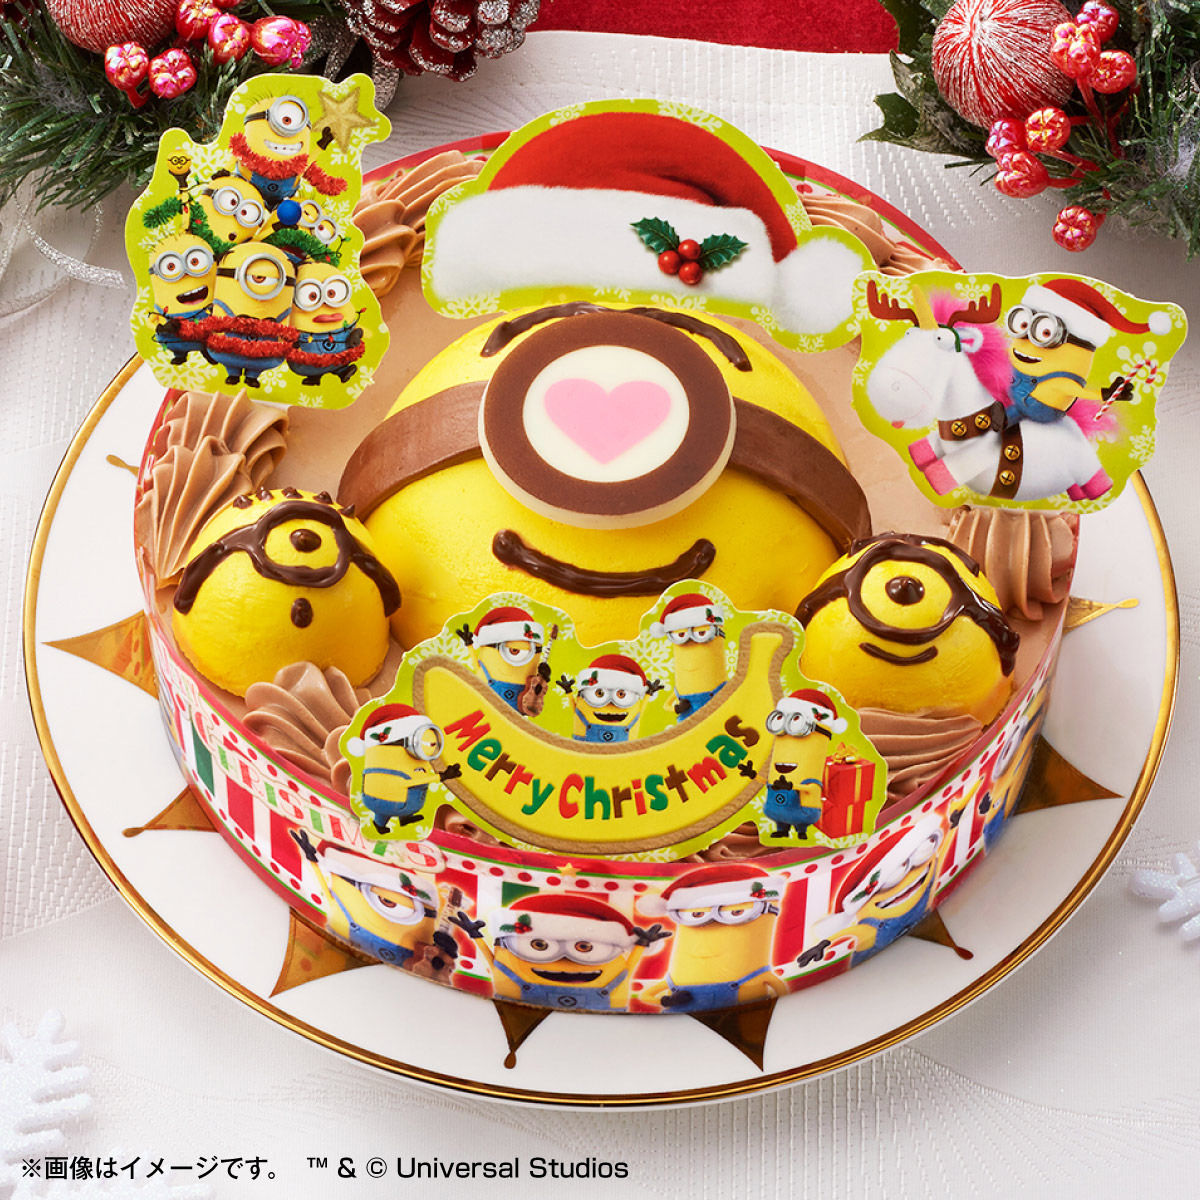 ブロンズ 支店 ディスコ アンパンマン クリスマス ケーキ 通販 Arutasu Jp